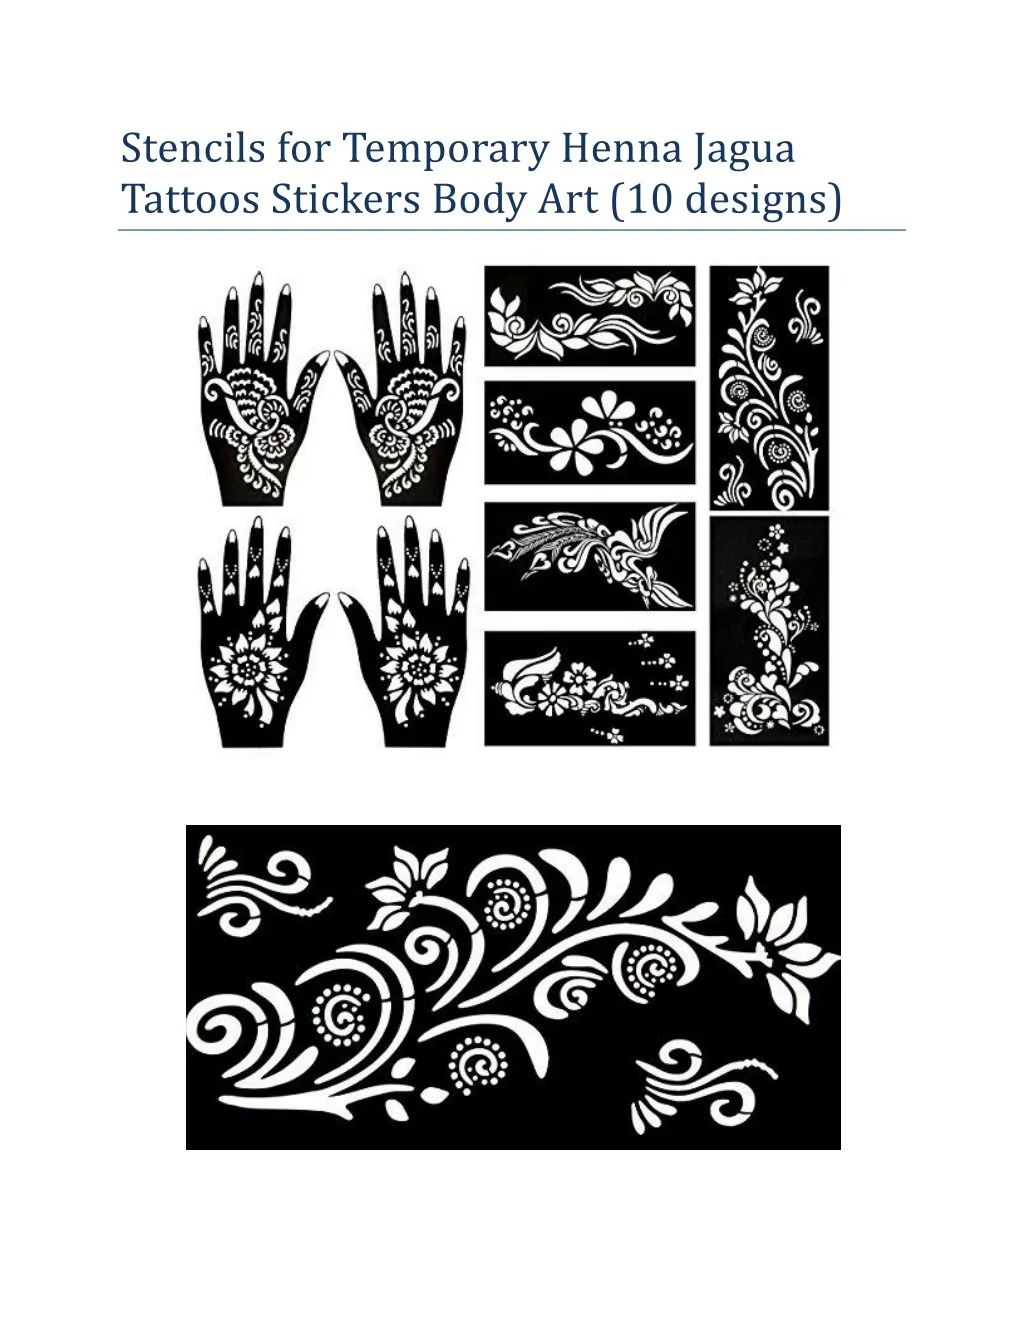 stencils for temporary henna jagua tattoos